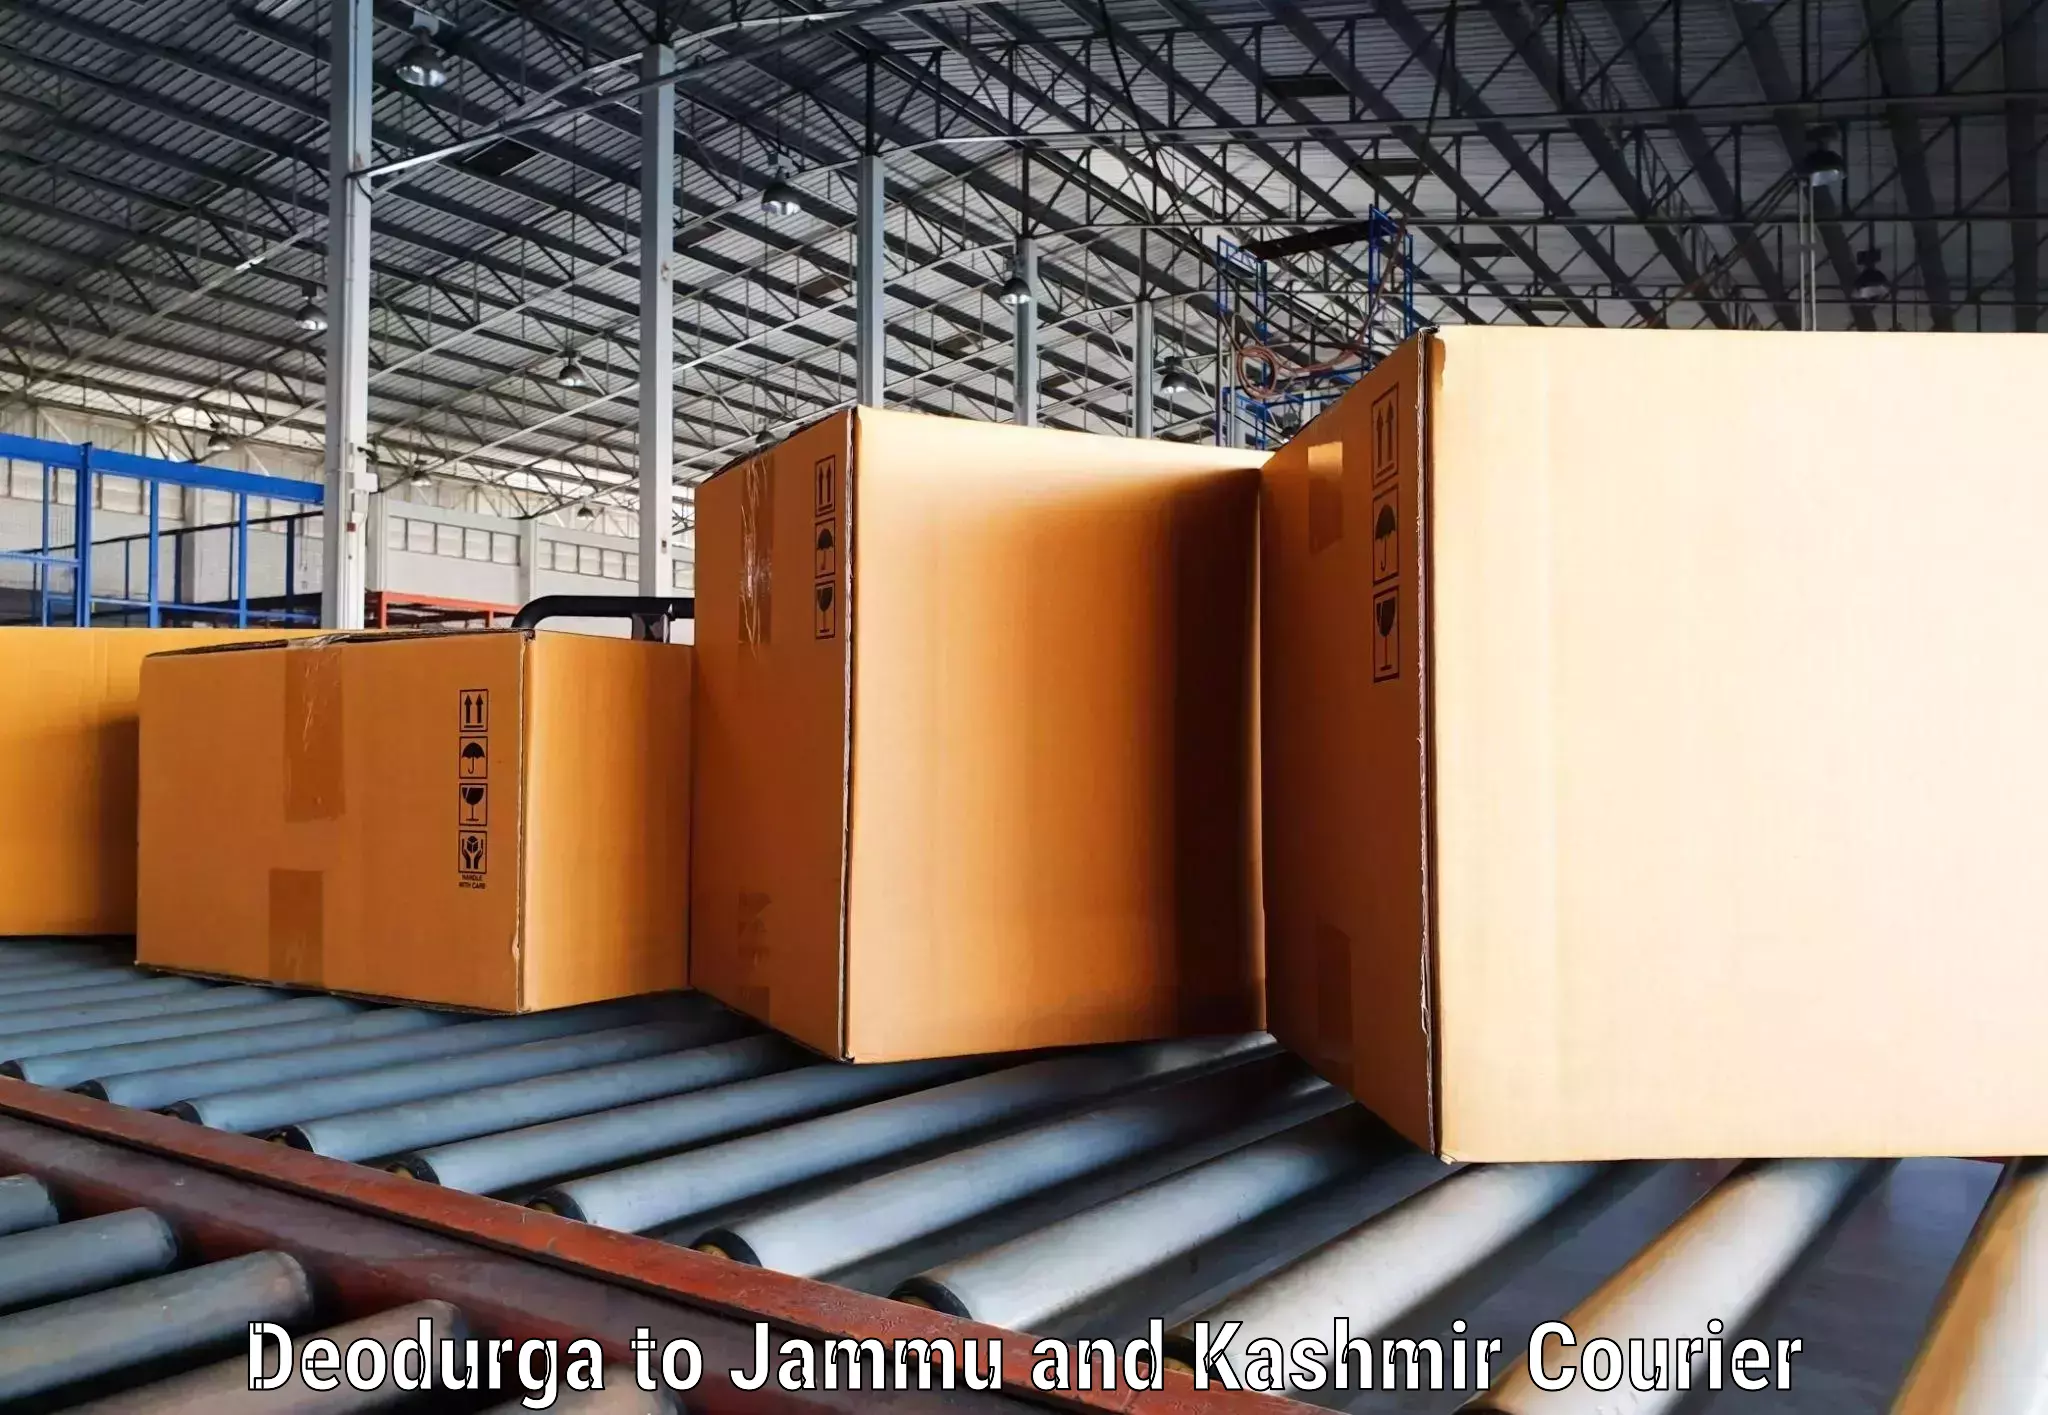 Express courier capabilities Deodurga to Jammu